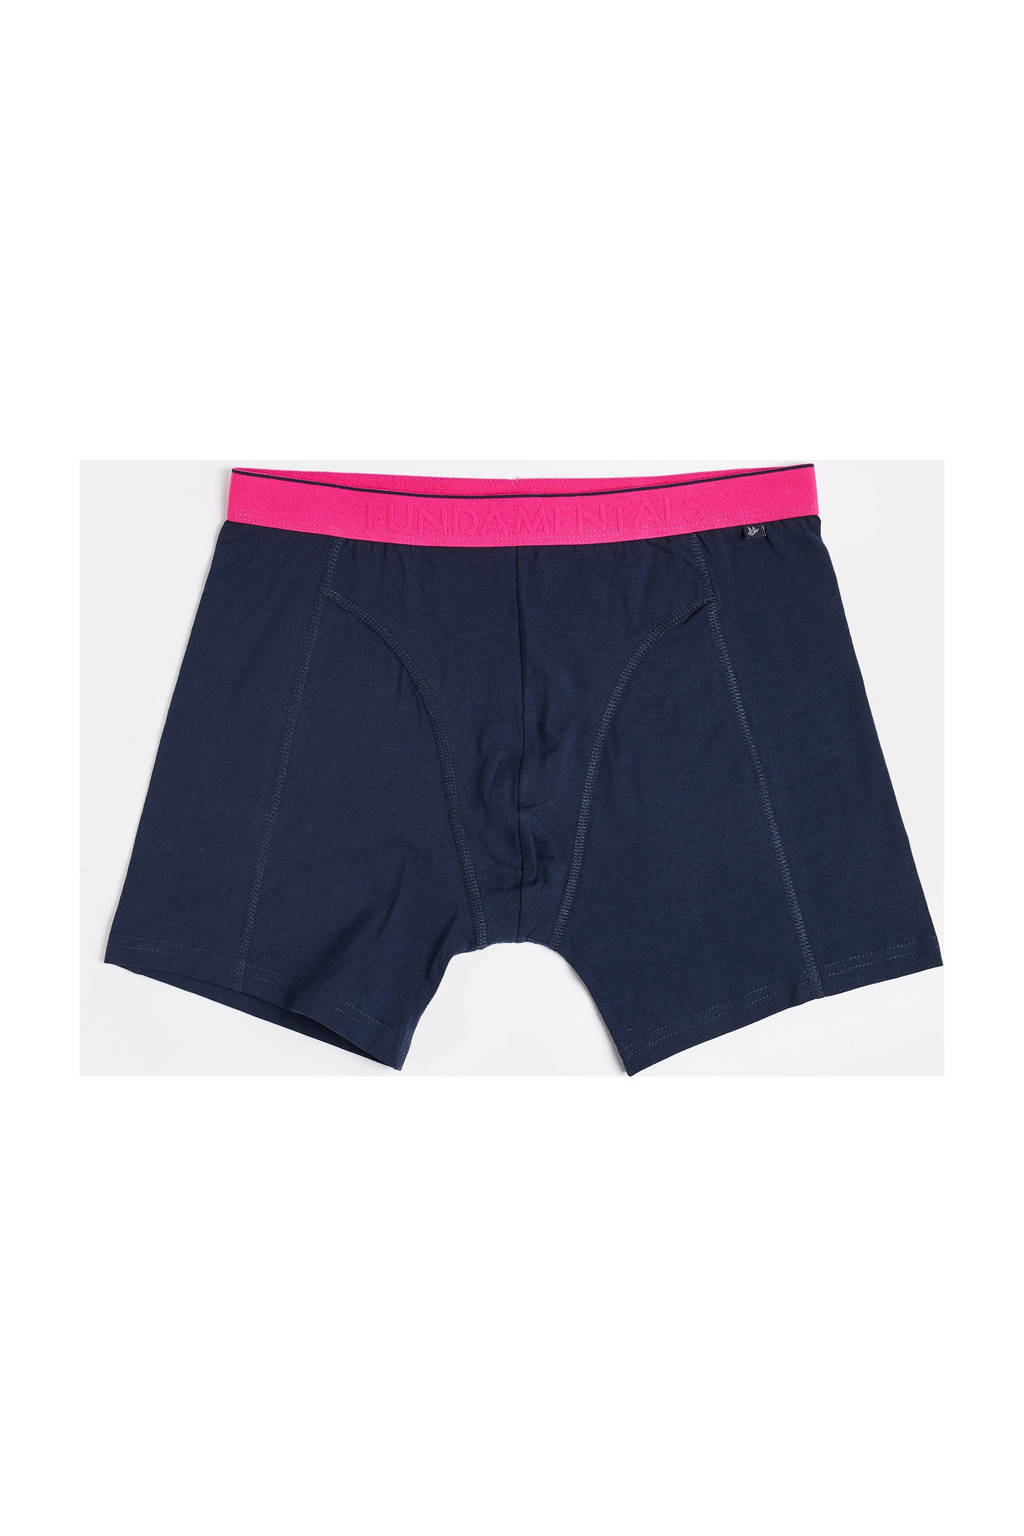 WE Fashion Fundamentals boxershort, Donkerblauw/roze